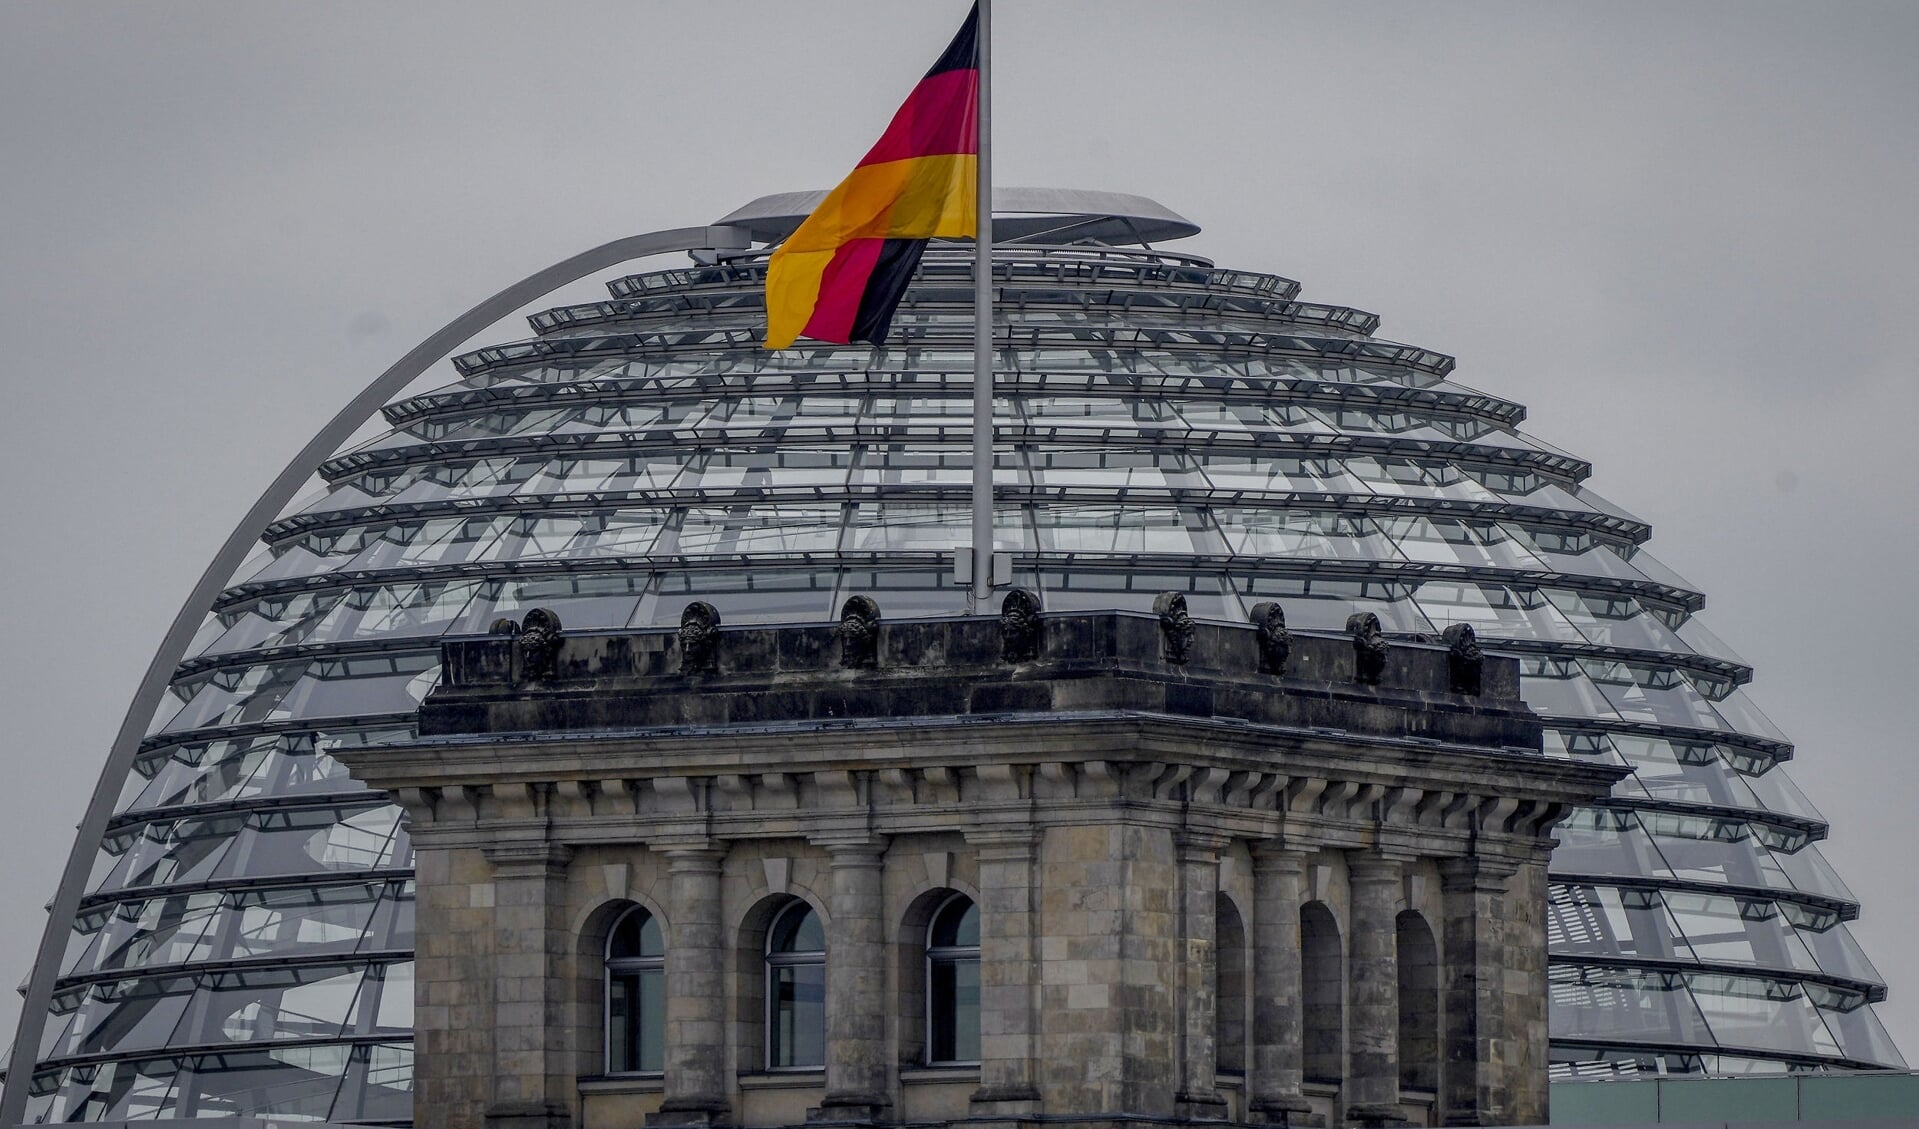 I henhold til Tysklands forfatning slutter en regerings embedsperiode automatisk, når det nyvalgte parlament holder den første samling. Dette ventes at ske den 26. oktober, men ingen ved endnu, hvilken regering der kommer.